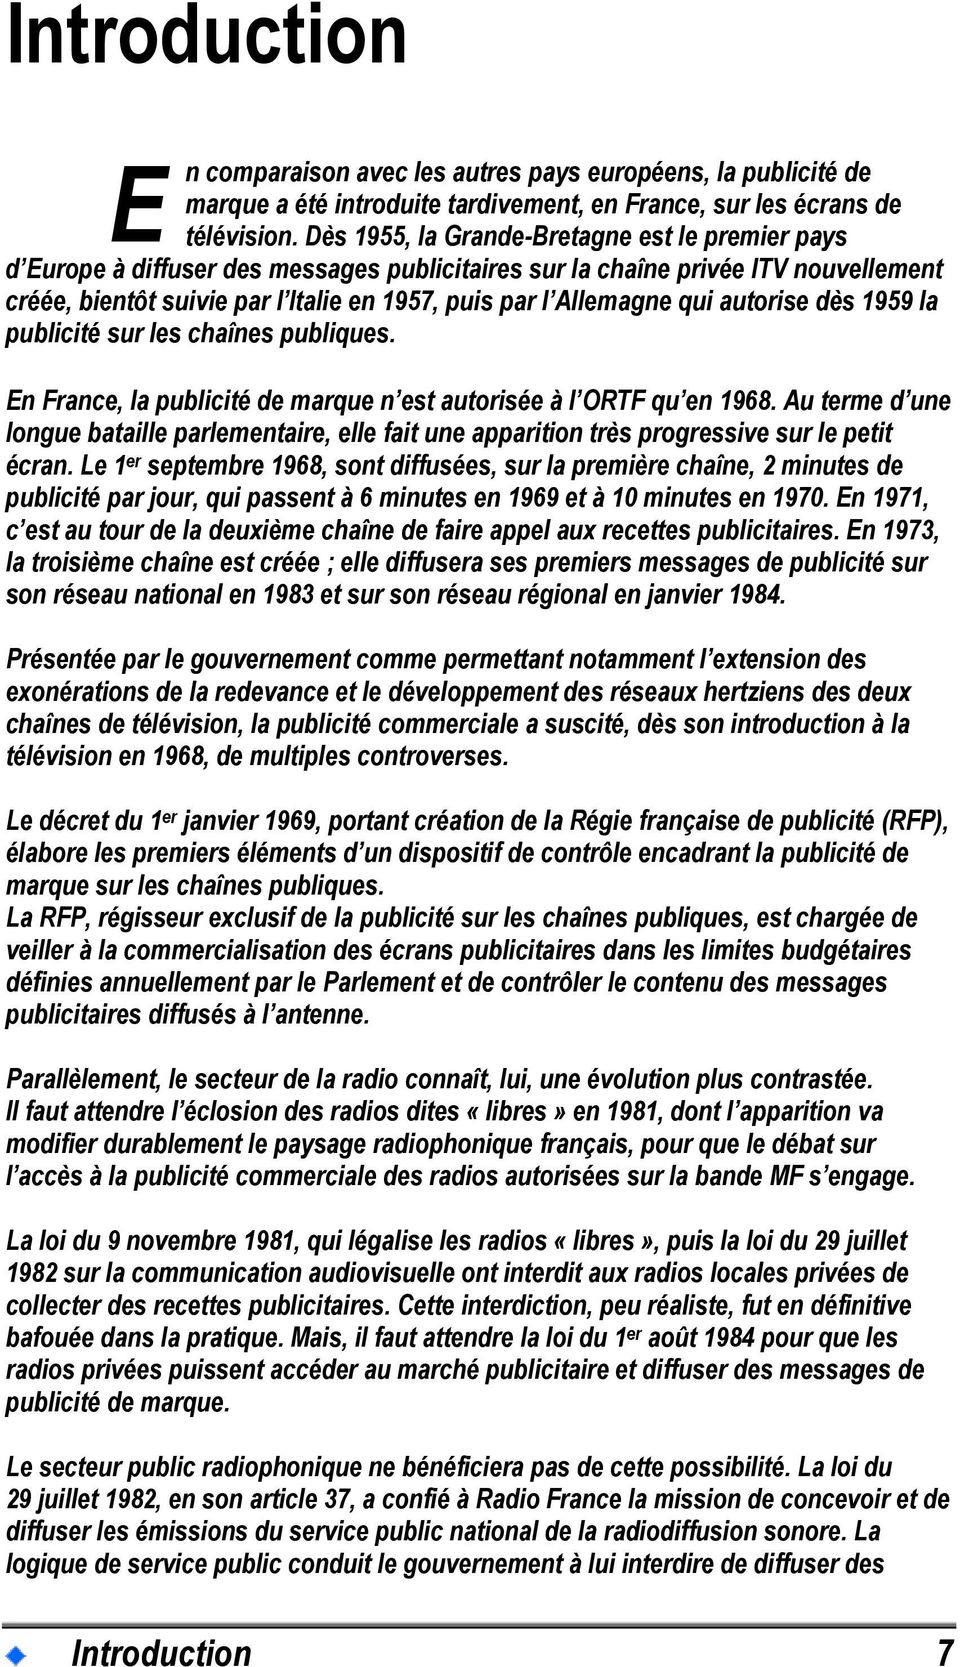 qui autorise dès 1959 la publicité sur les chaînes publiques. En France, la publicité de marque n est autorisée à l ORTF qu en 1968.